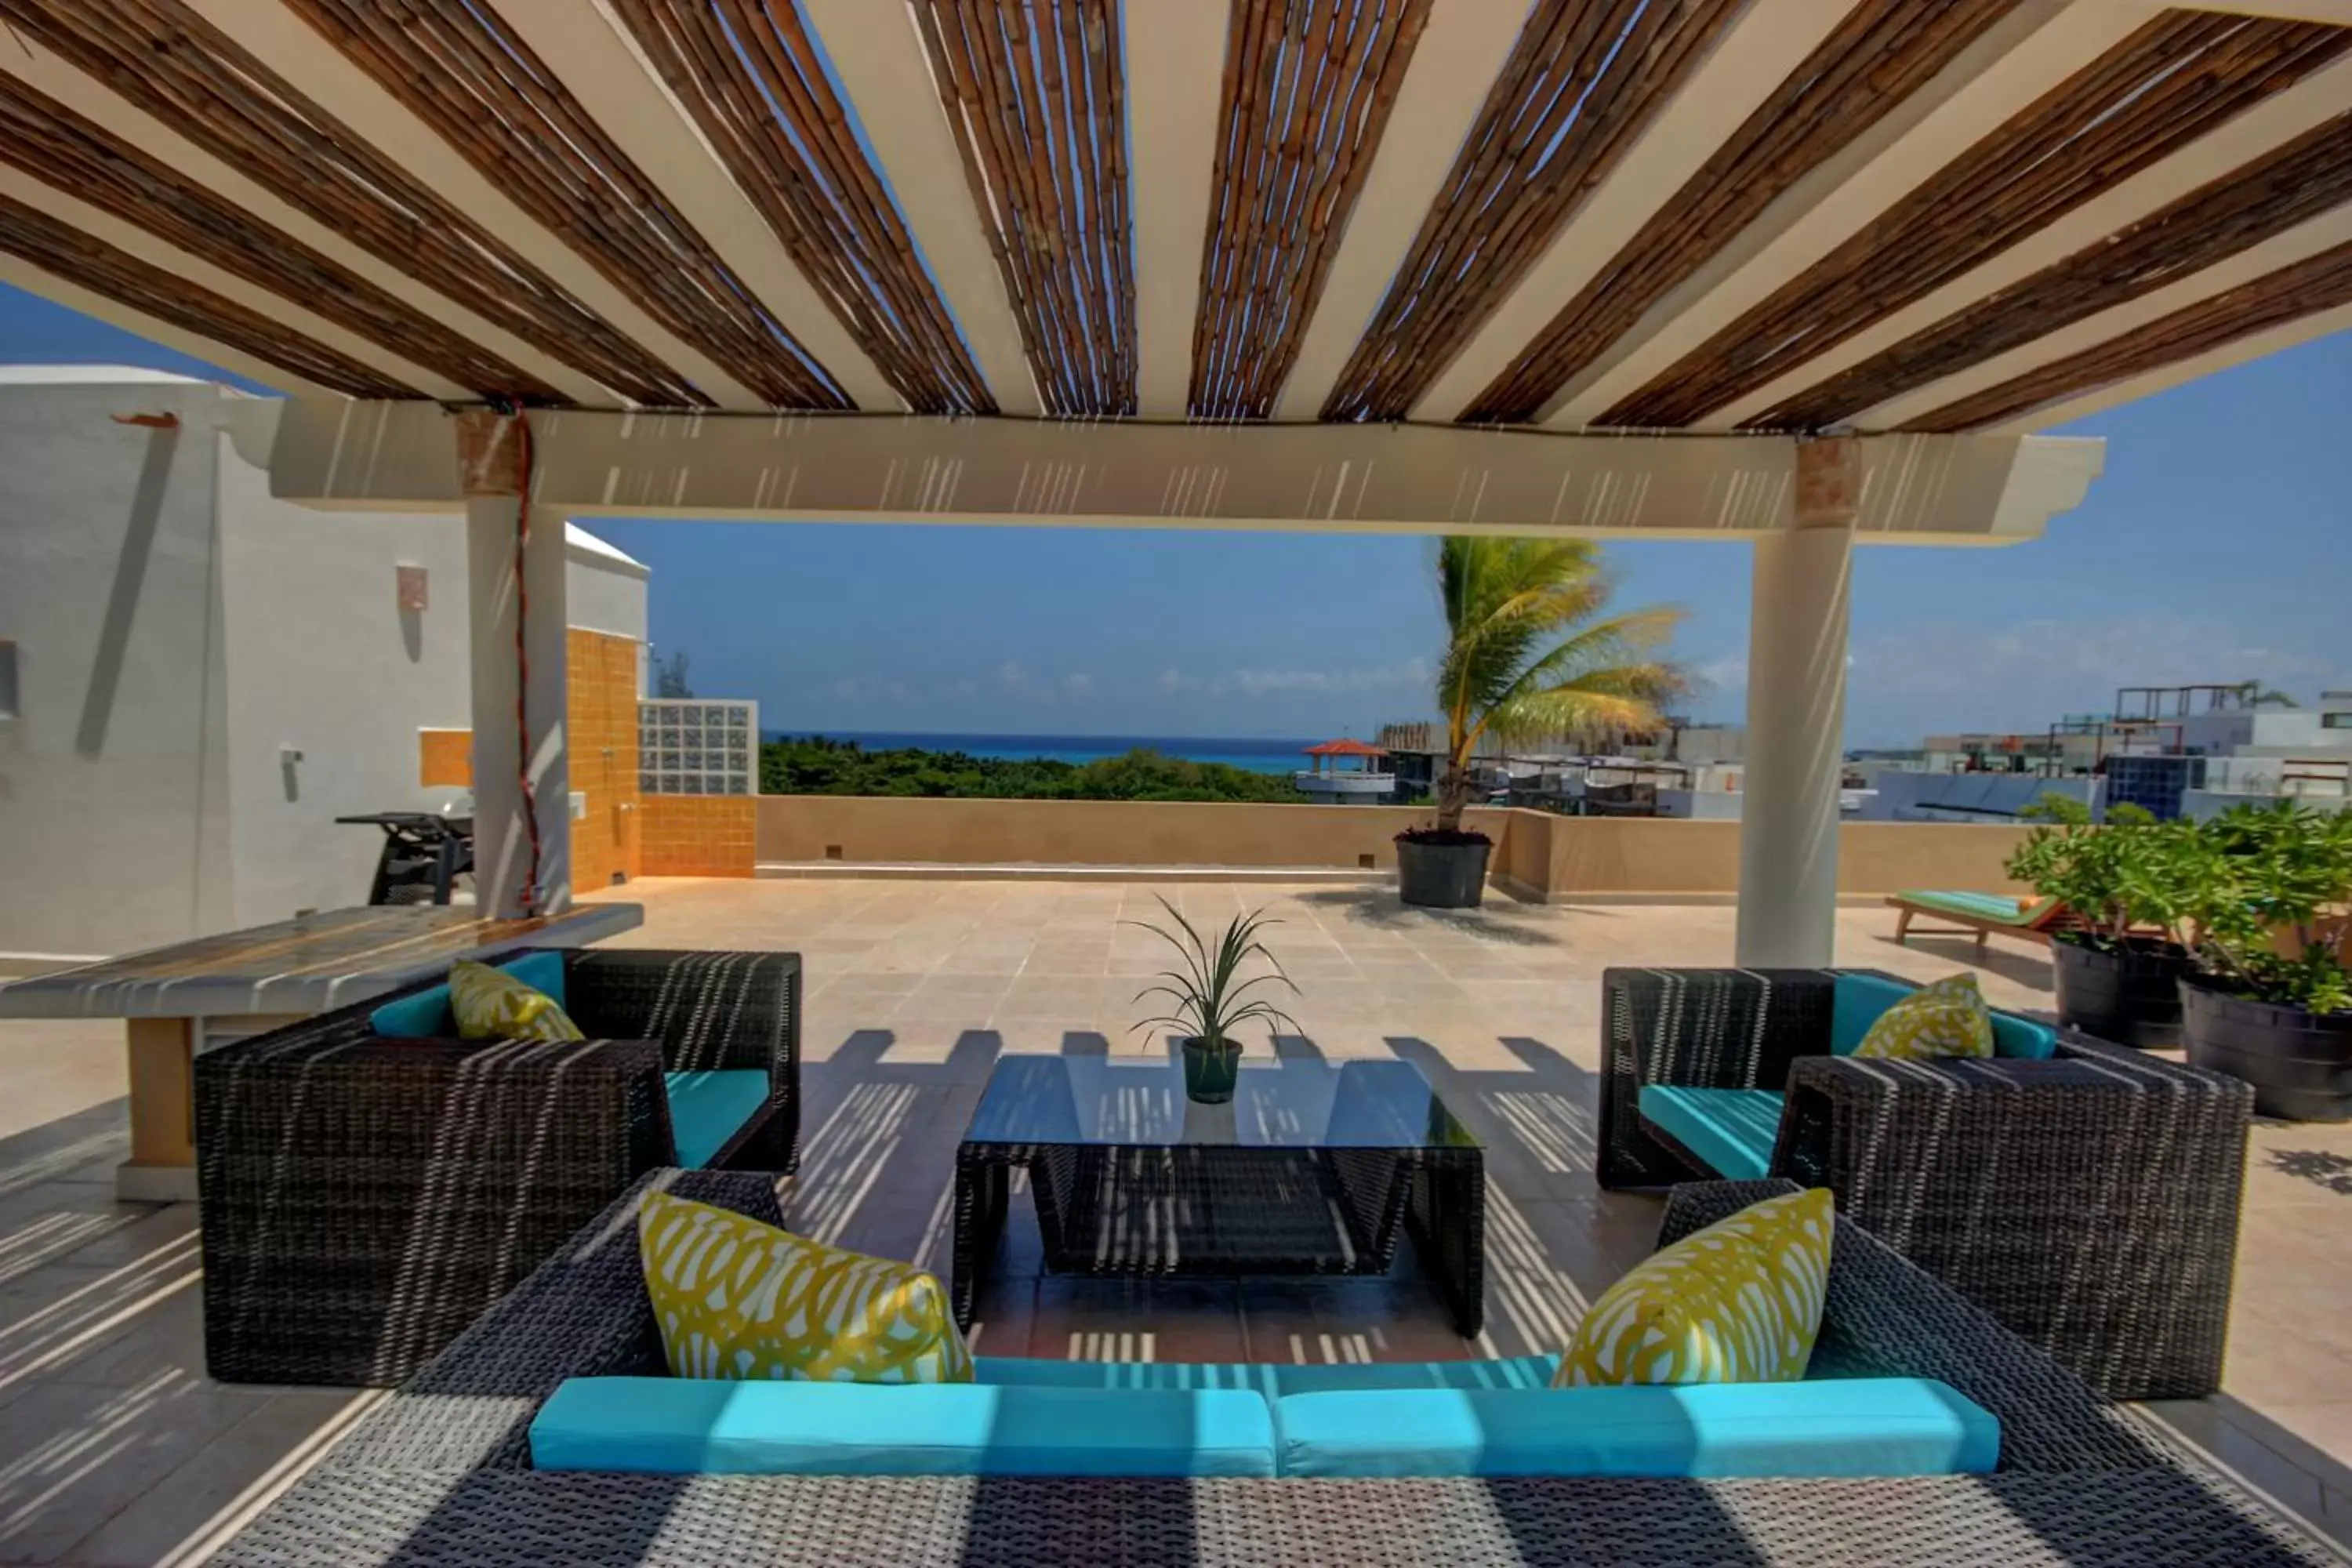 Property building, Patio/Outdoor Area in Riviera Maya Suites